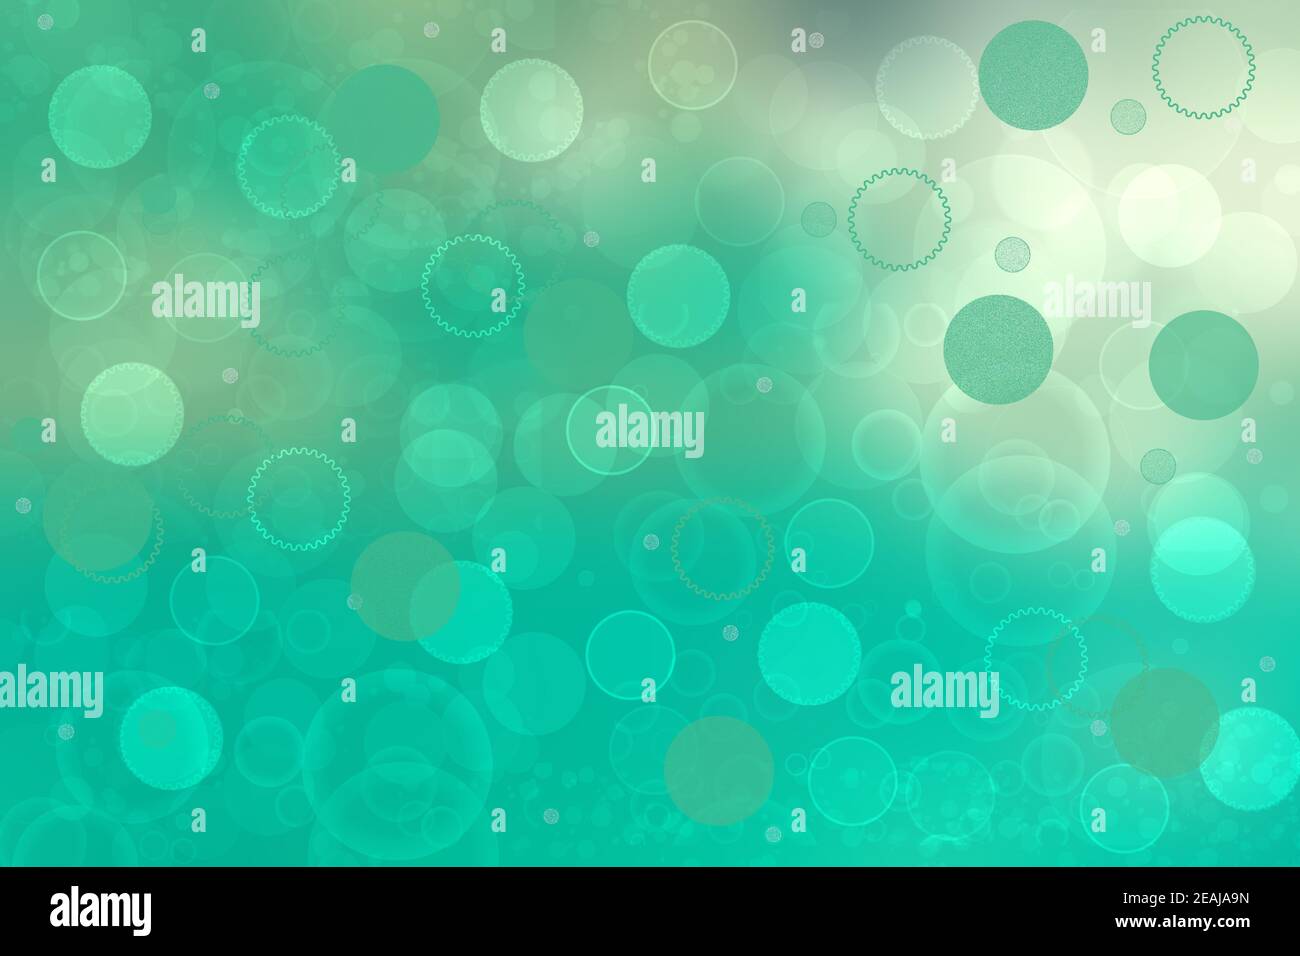 Abstrakter Verlauf türkis hellgrün glänzend verschwommene Hintergrundtextur mit kreisförmigen Bokeh-Lichtern. Schöne Kulisse. Platz für das Design. Stockfoto